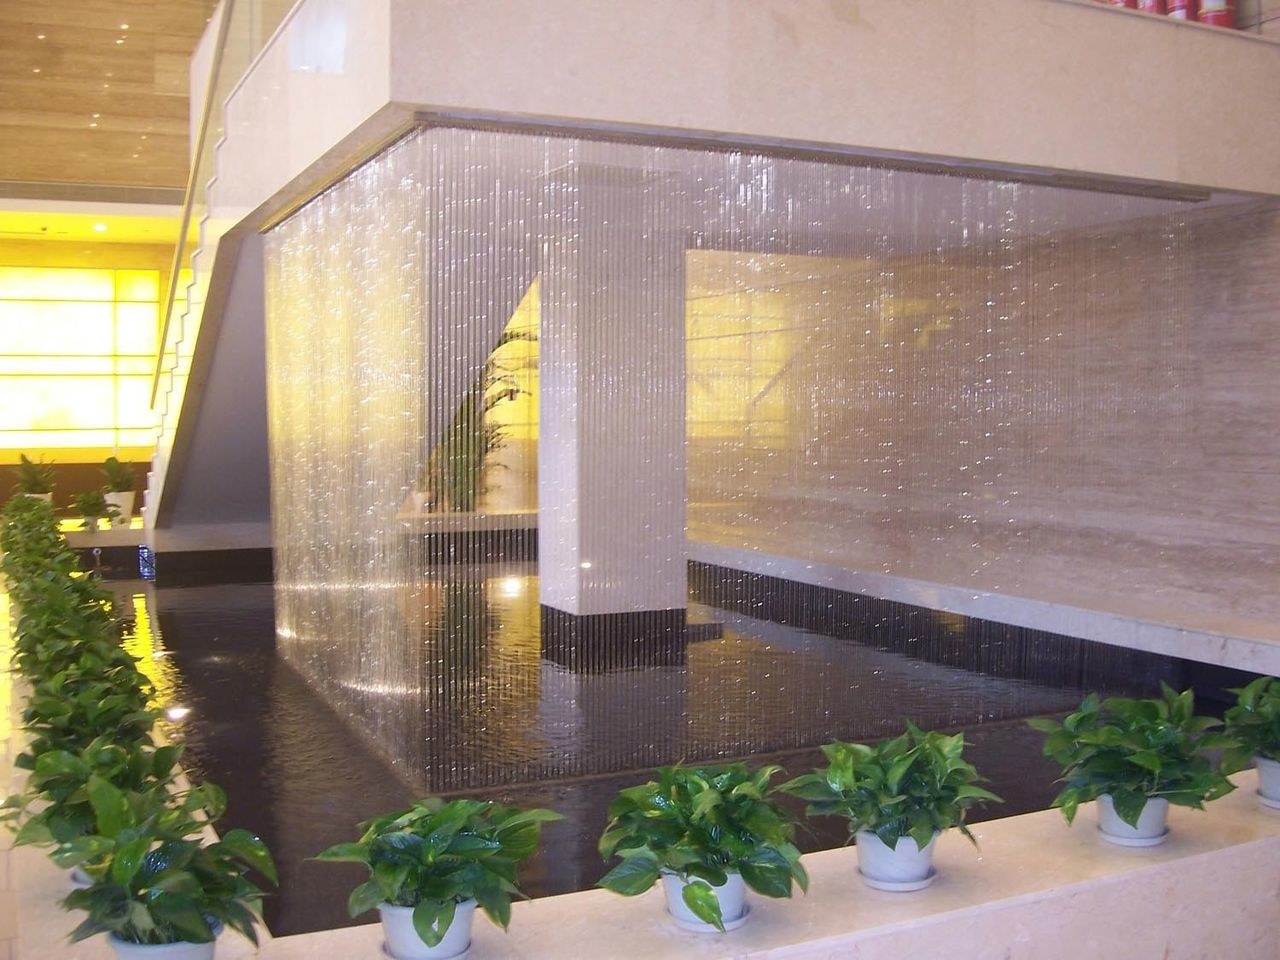 Водопад по другому. Водяная завеса водопад. Водопад по стеклу в интерьере. Искусственный водопад по стеклу. Фонтан в помещении.